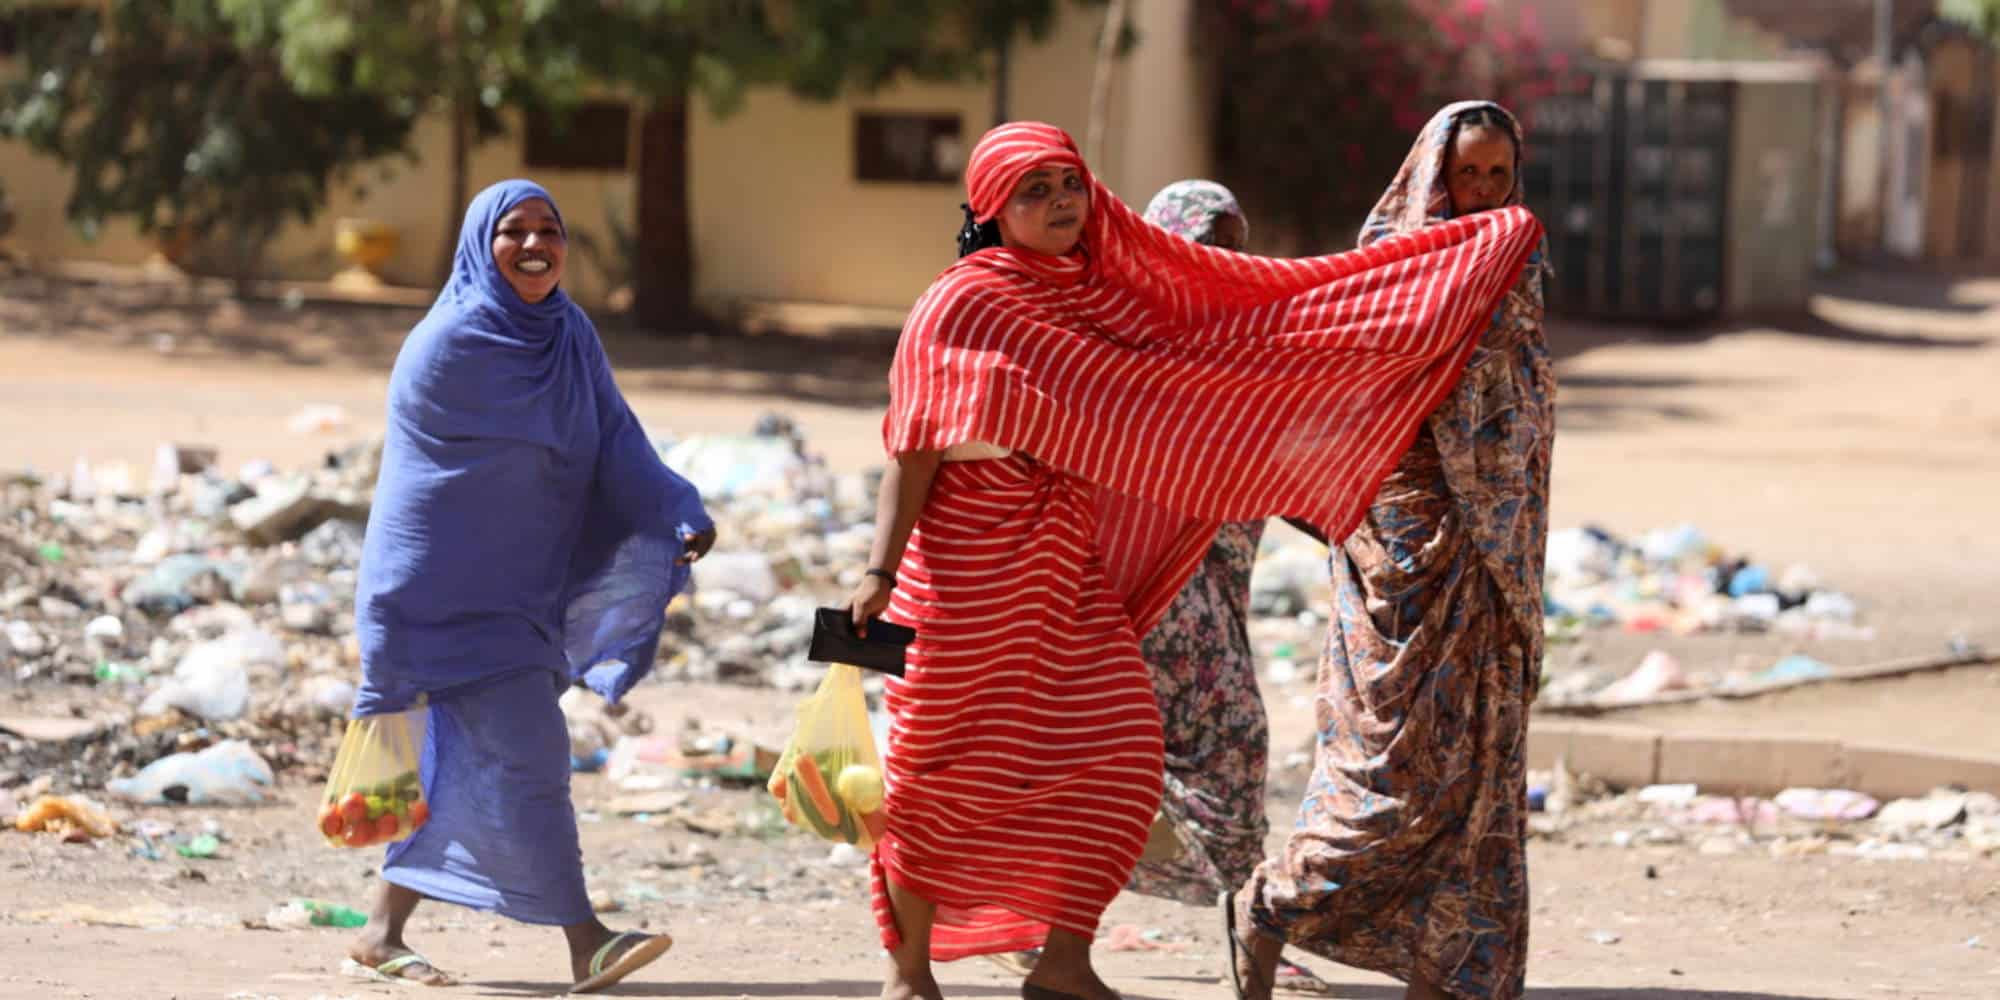 Έκρυθμη η κατάσταση στο Σουδάν: Κατέρρευσε για δεύτερη φορά η εκεχειρία, εγκαταλείπουν το Χαρτούμ οι πολίτες